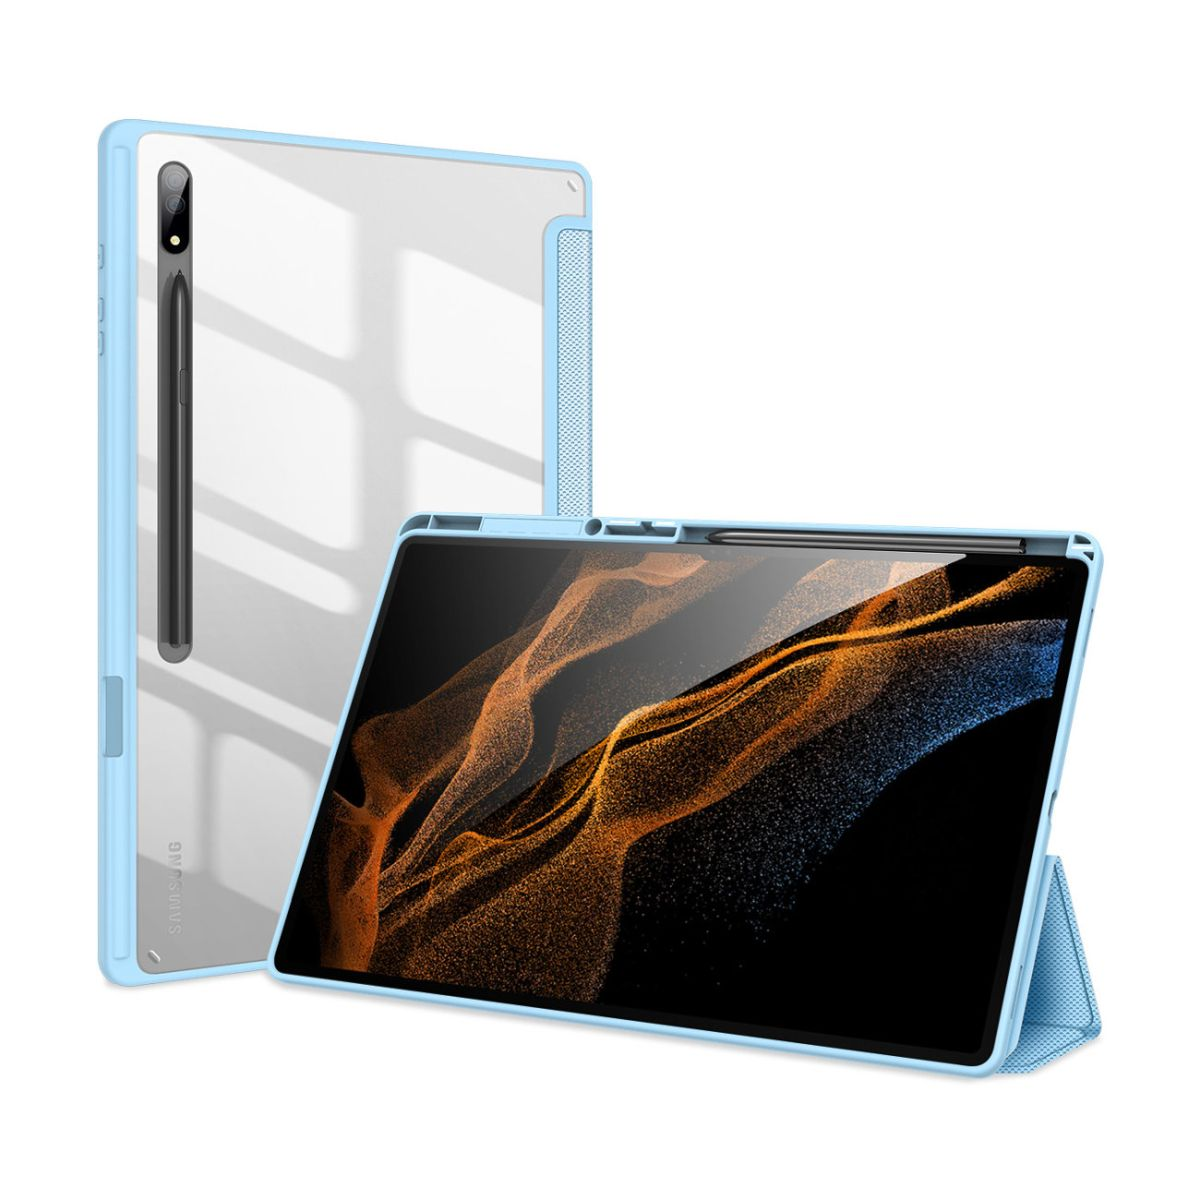 Tab für Ultra Bookcover DUCIS Galaxy DUX Blau Tablethülle S8 Samsung Toby Polyurethan, Kunststoff,